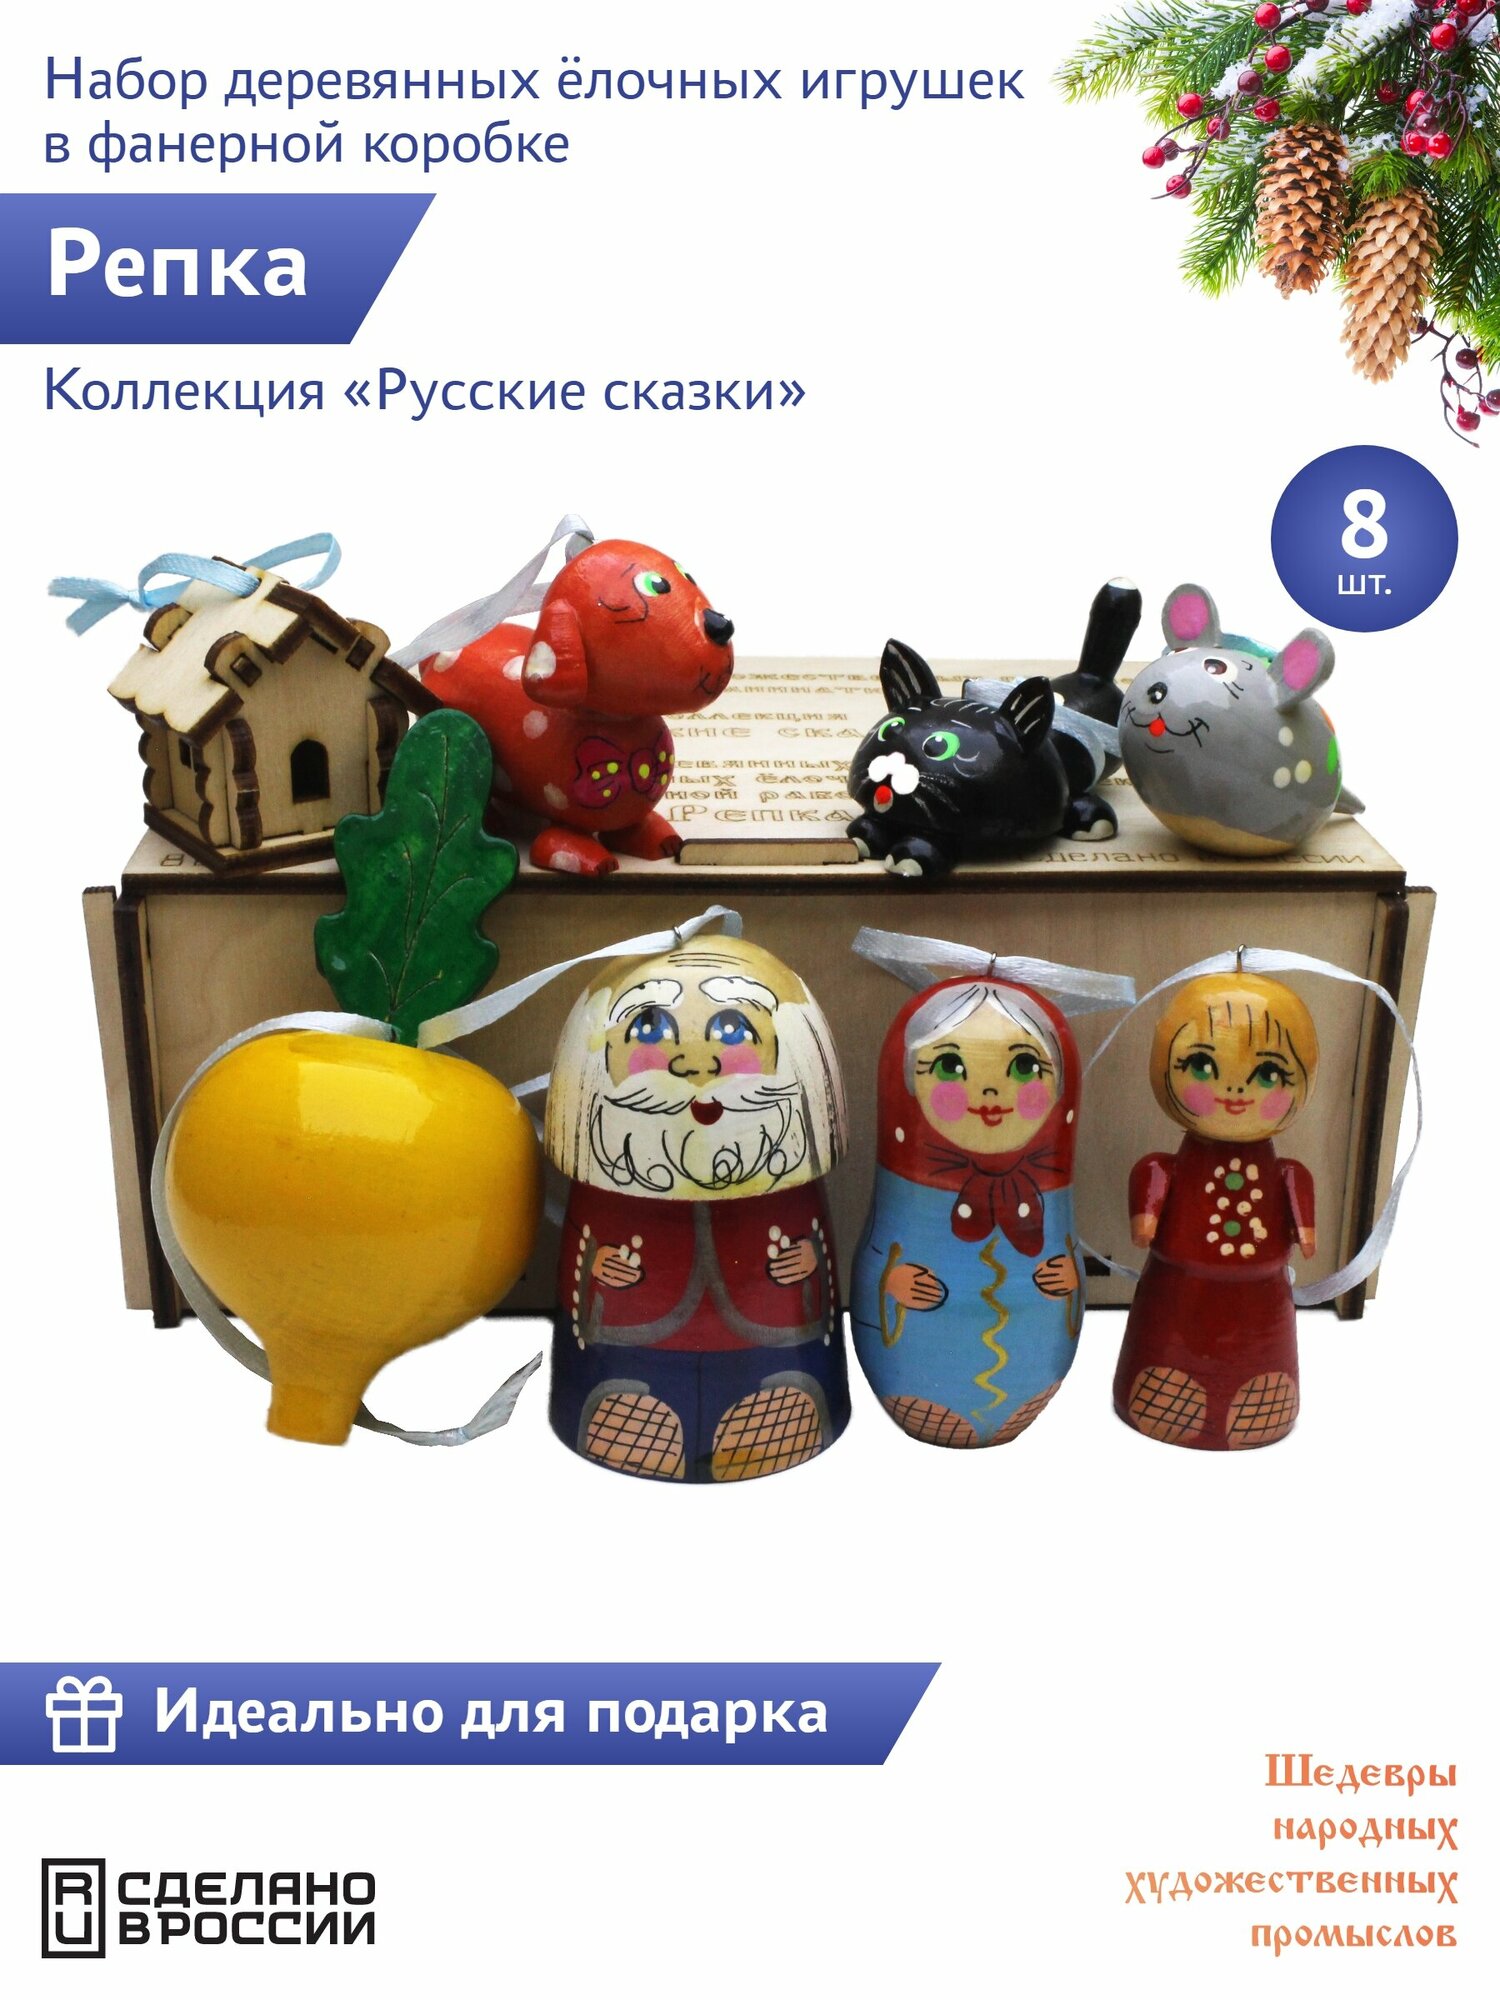 "Русские сказки: Репка" 8 штук Сказочный персонаж набор деревянных елочных игрушек в фанерной коробке